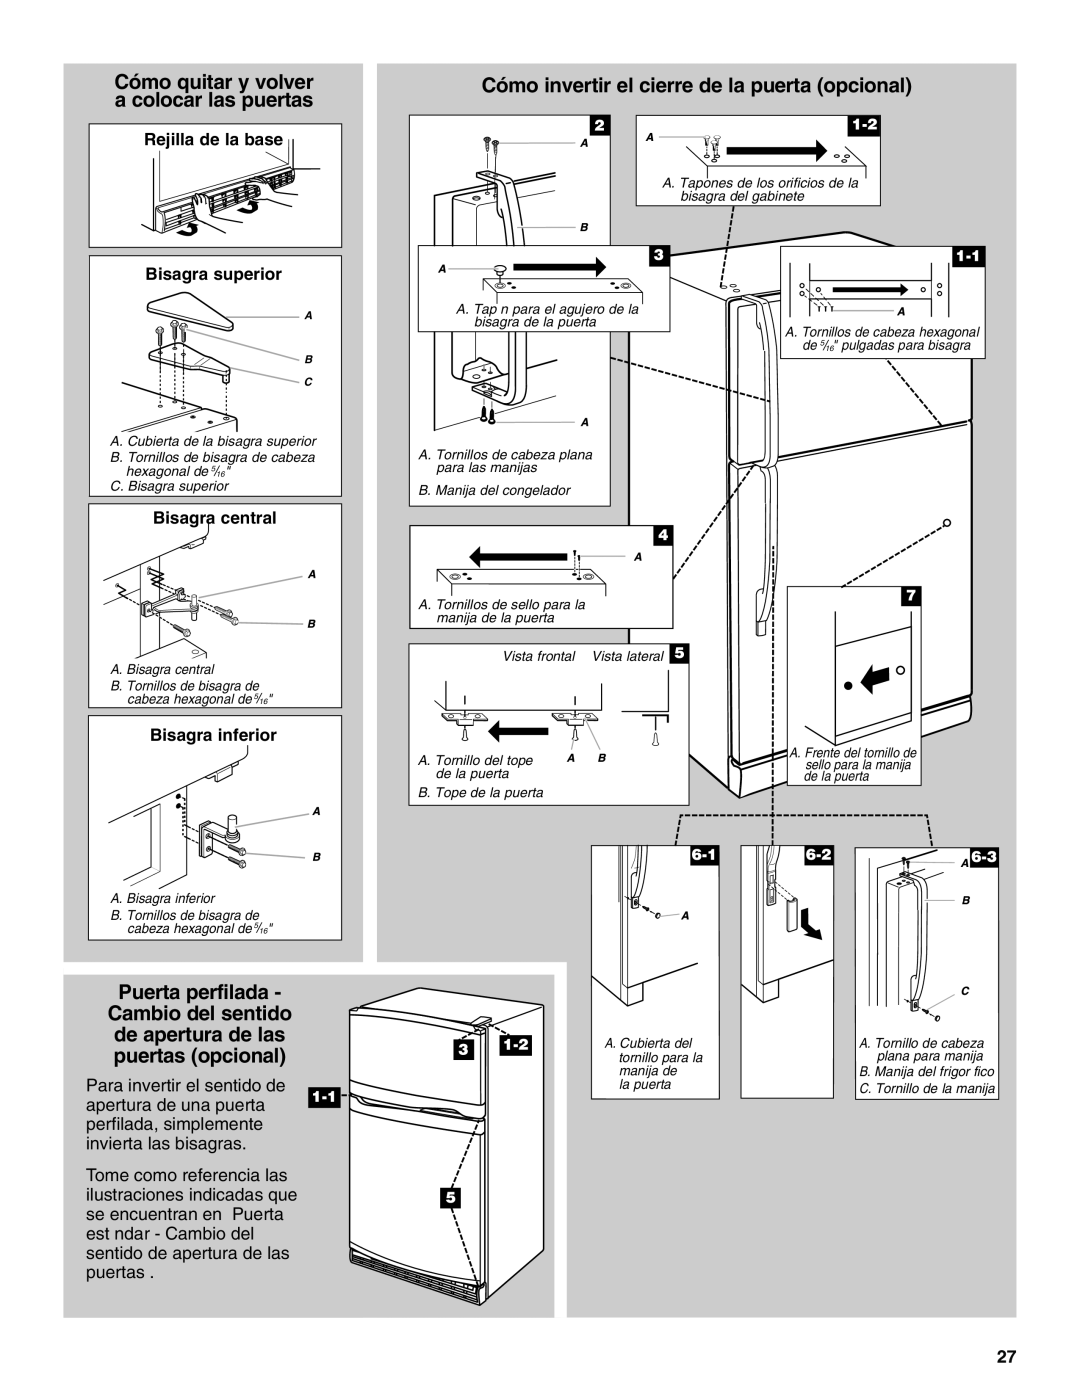 Whirlpool Refrigerator, 338, 2314183 manual Cómo invertir el cierre de la puerta opcional, Puerta perfilada, Bisagra inferior 